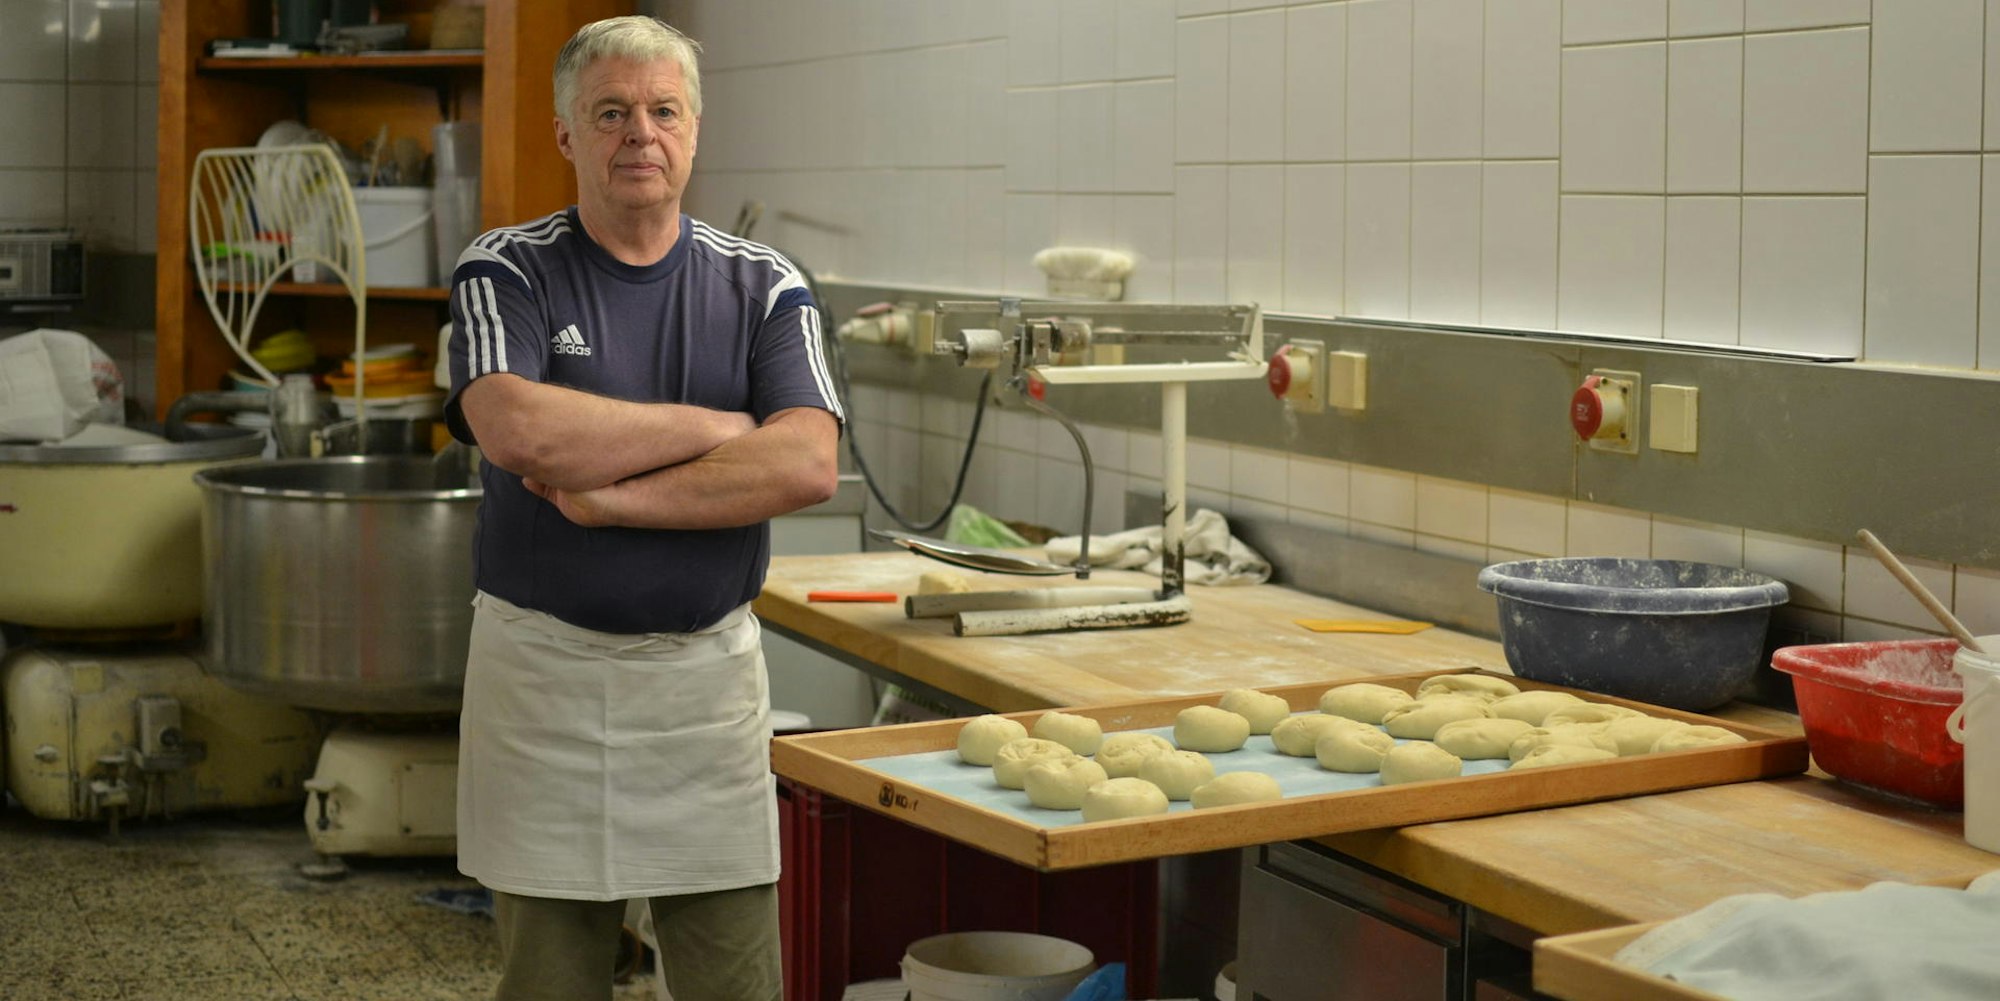 Will verkaufen: Toni Möres aus Harperscheid. Seit mehr als 20 Jahren führt der 63-Jährige schon die Bäckerei.